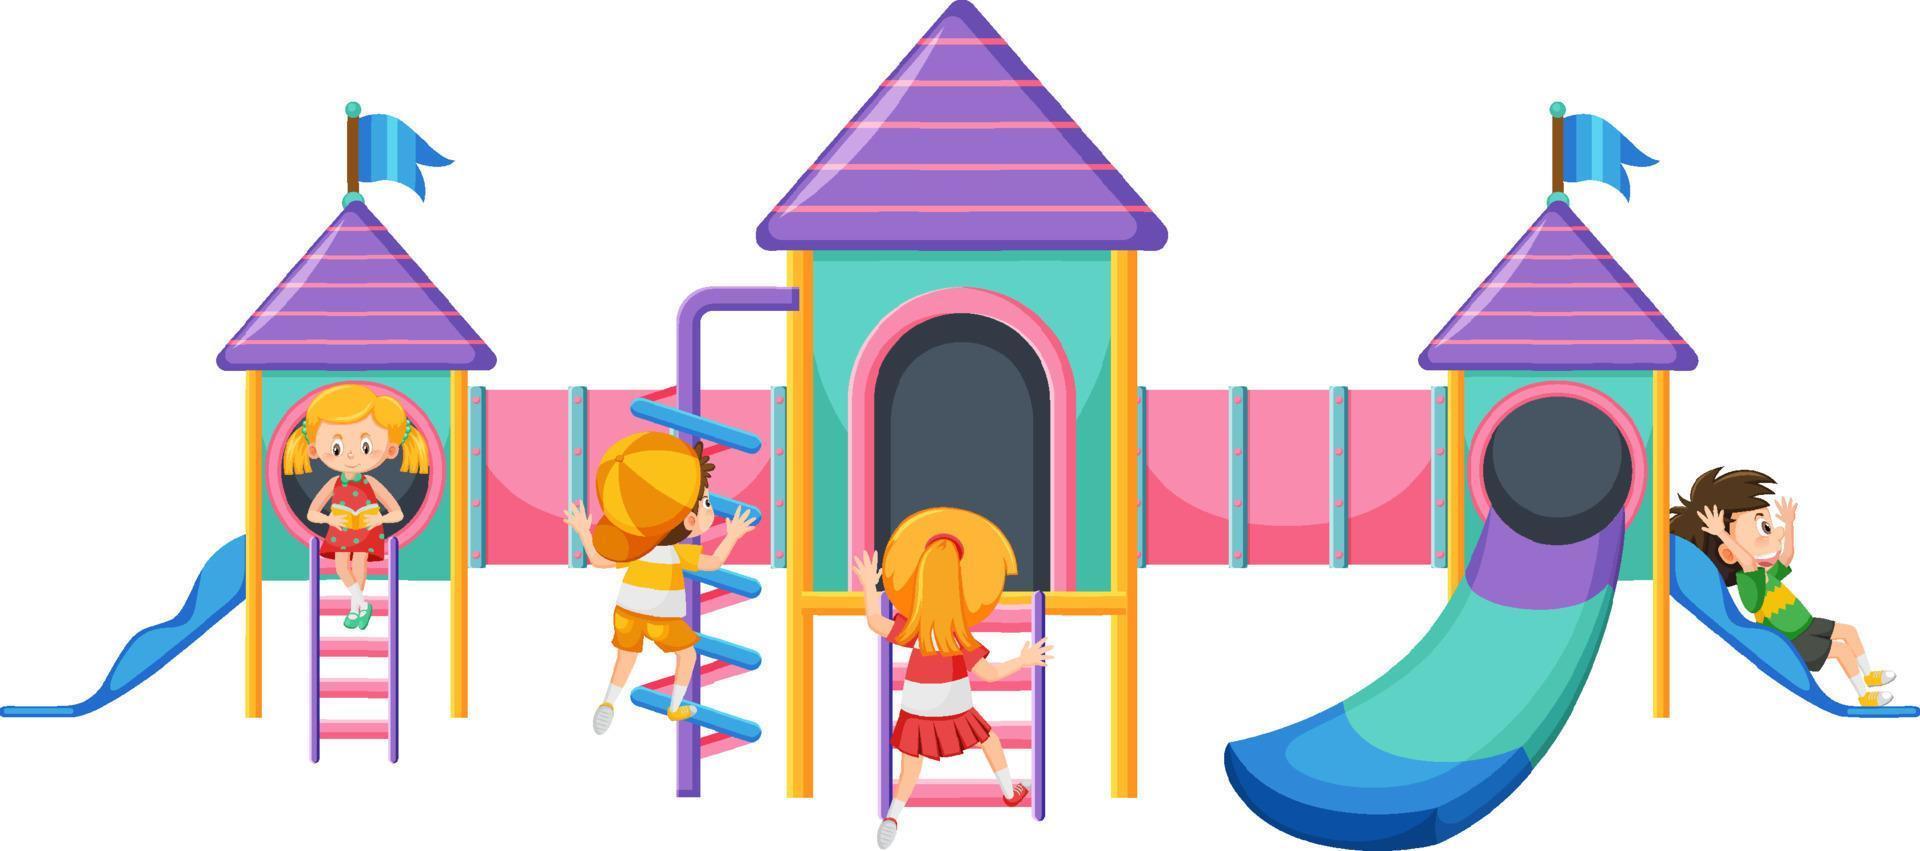 um slide de parque infantil em fundo branco vetor